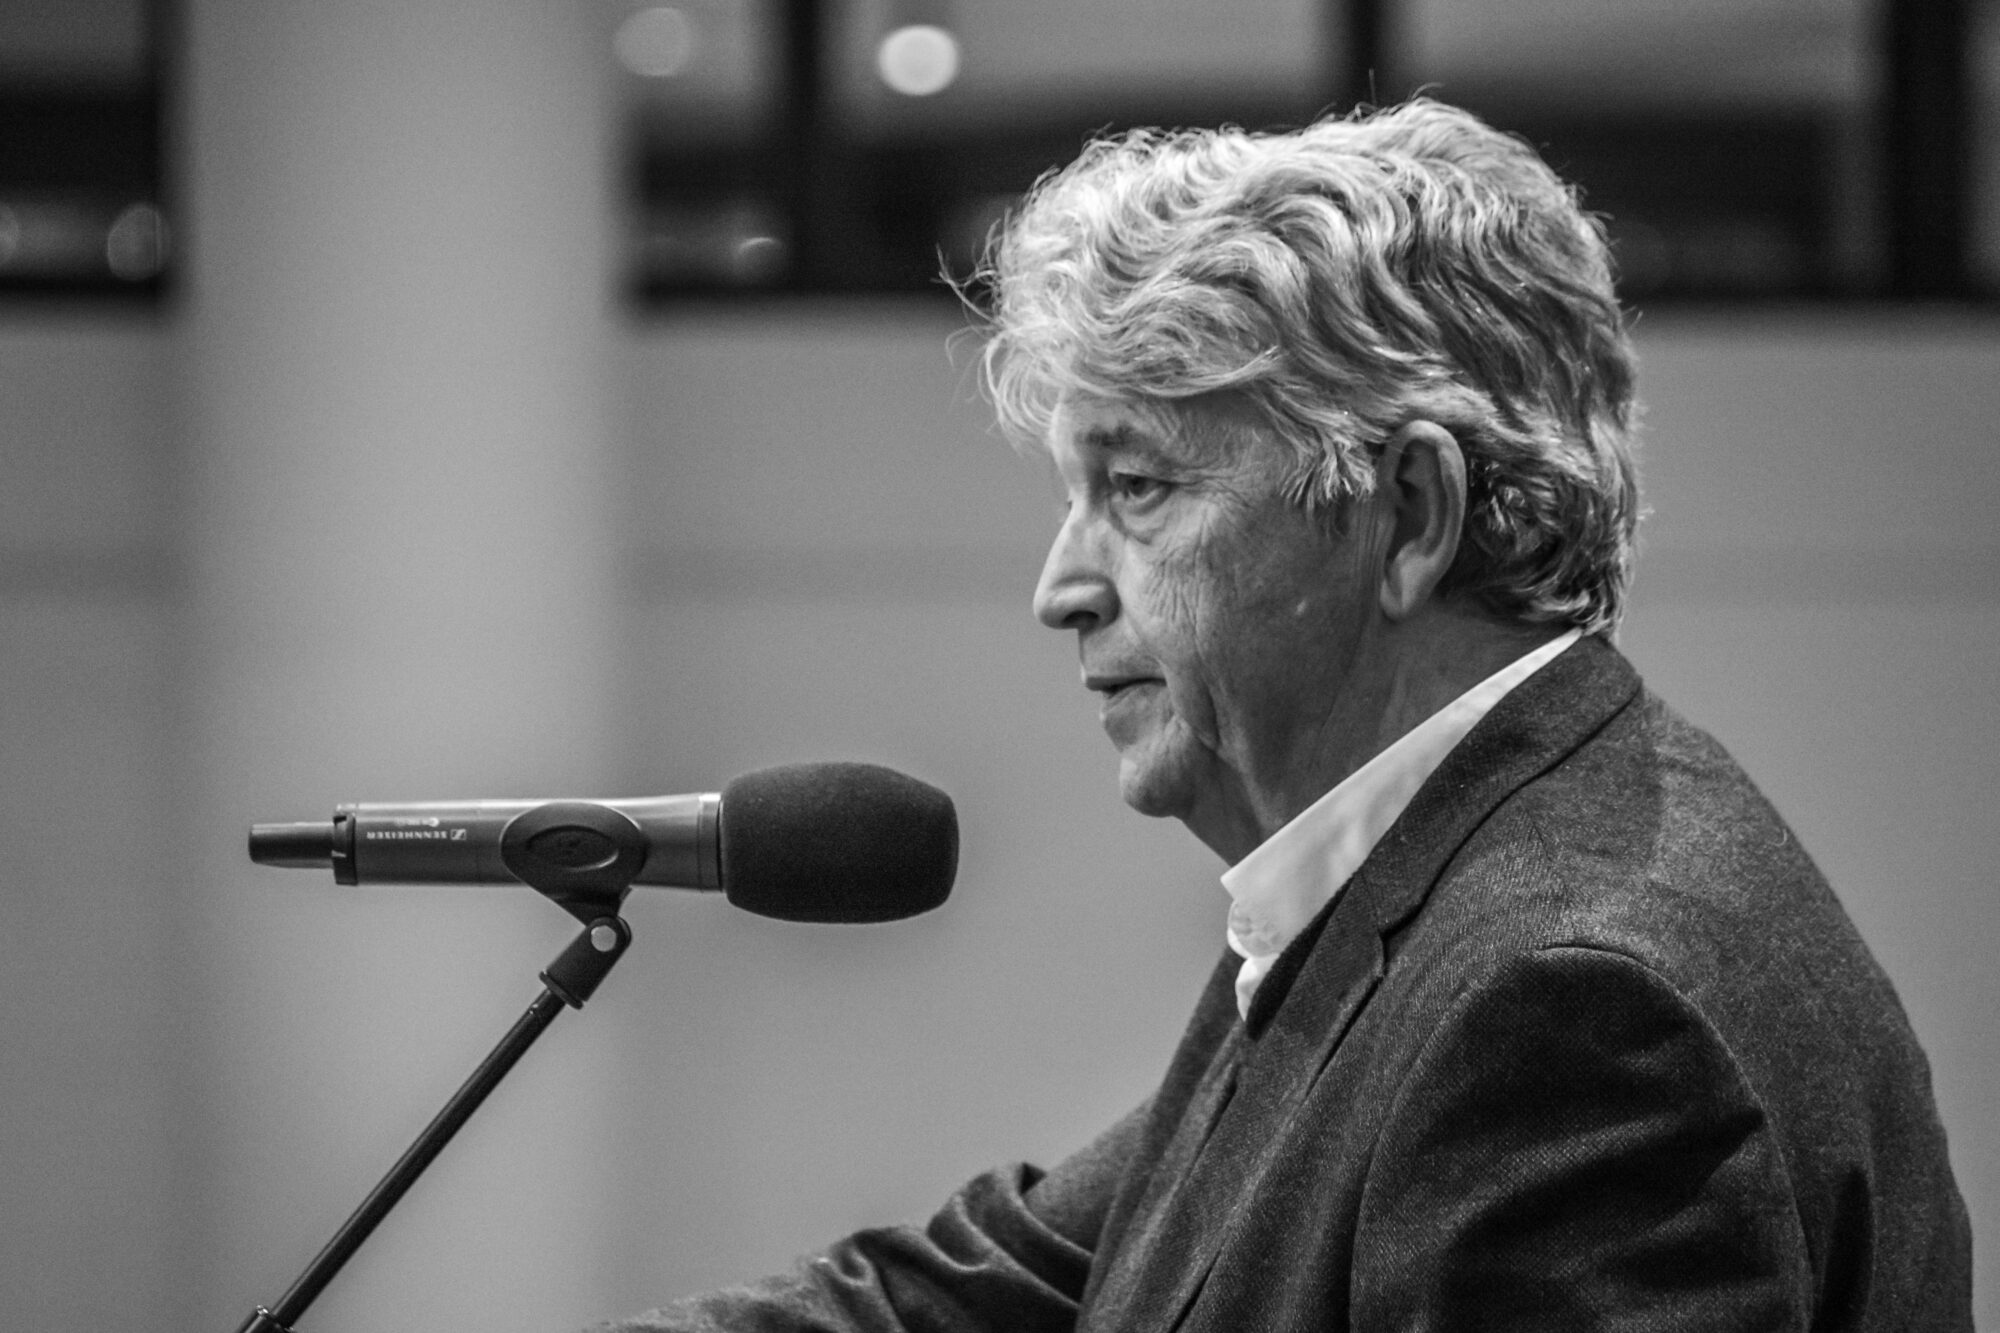 PvdA-fractievoorzitter Ties Stam (68) overleden